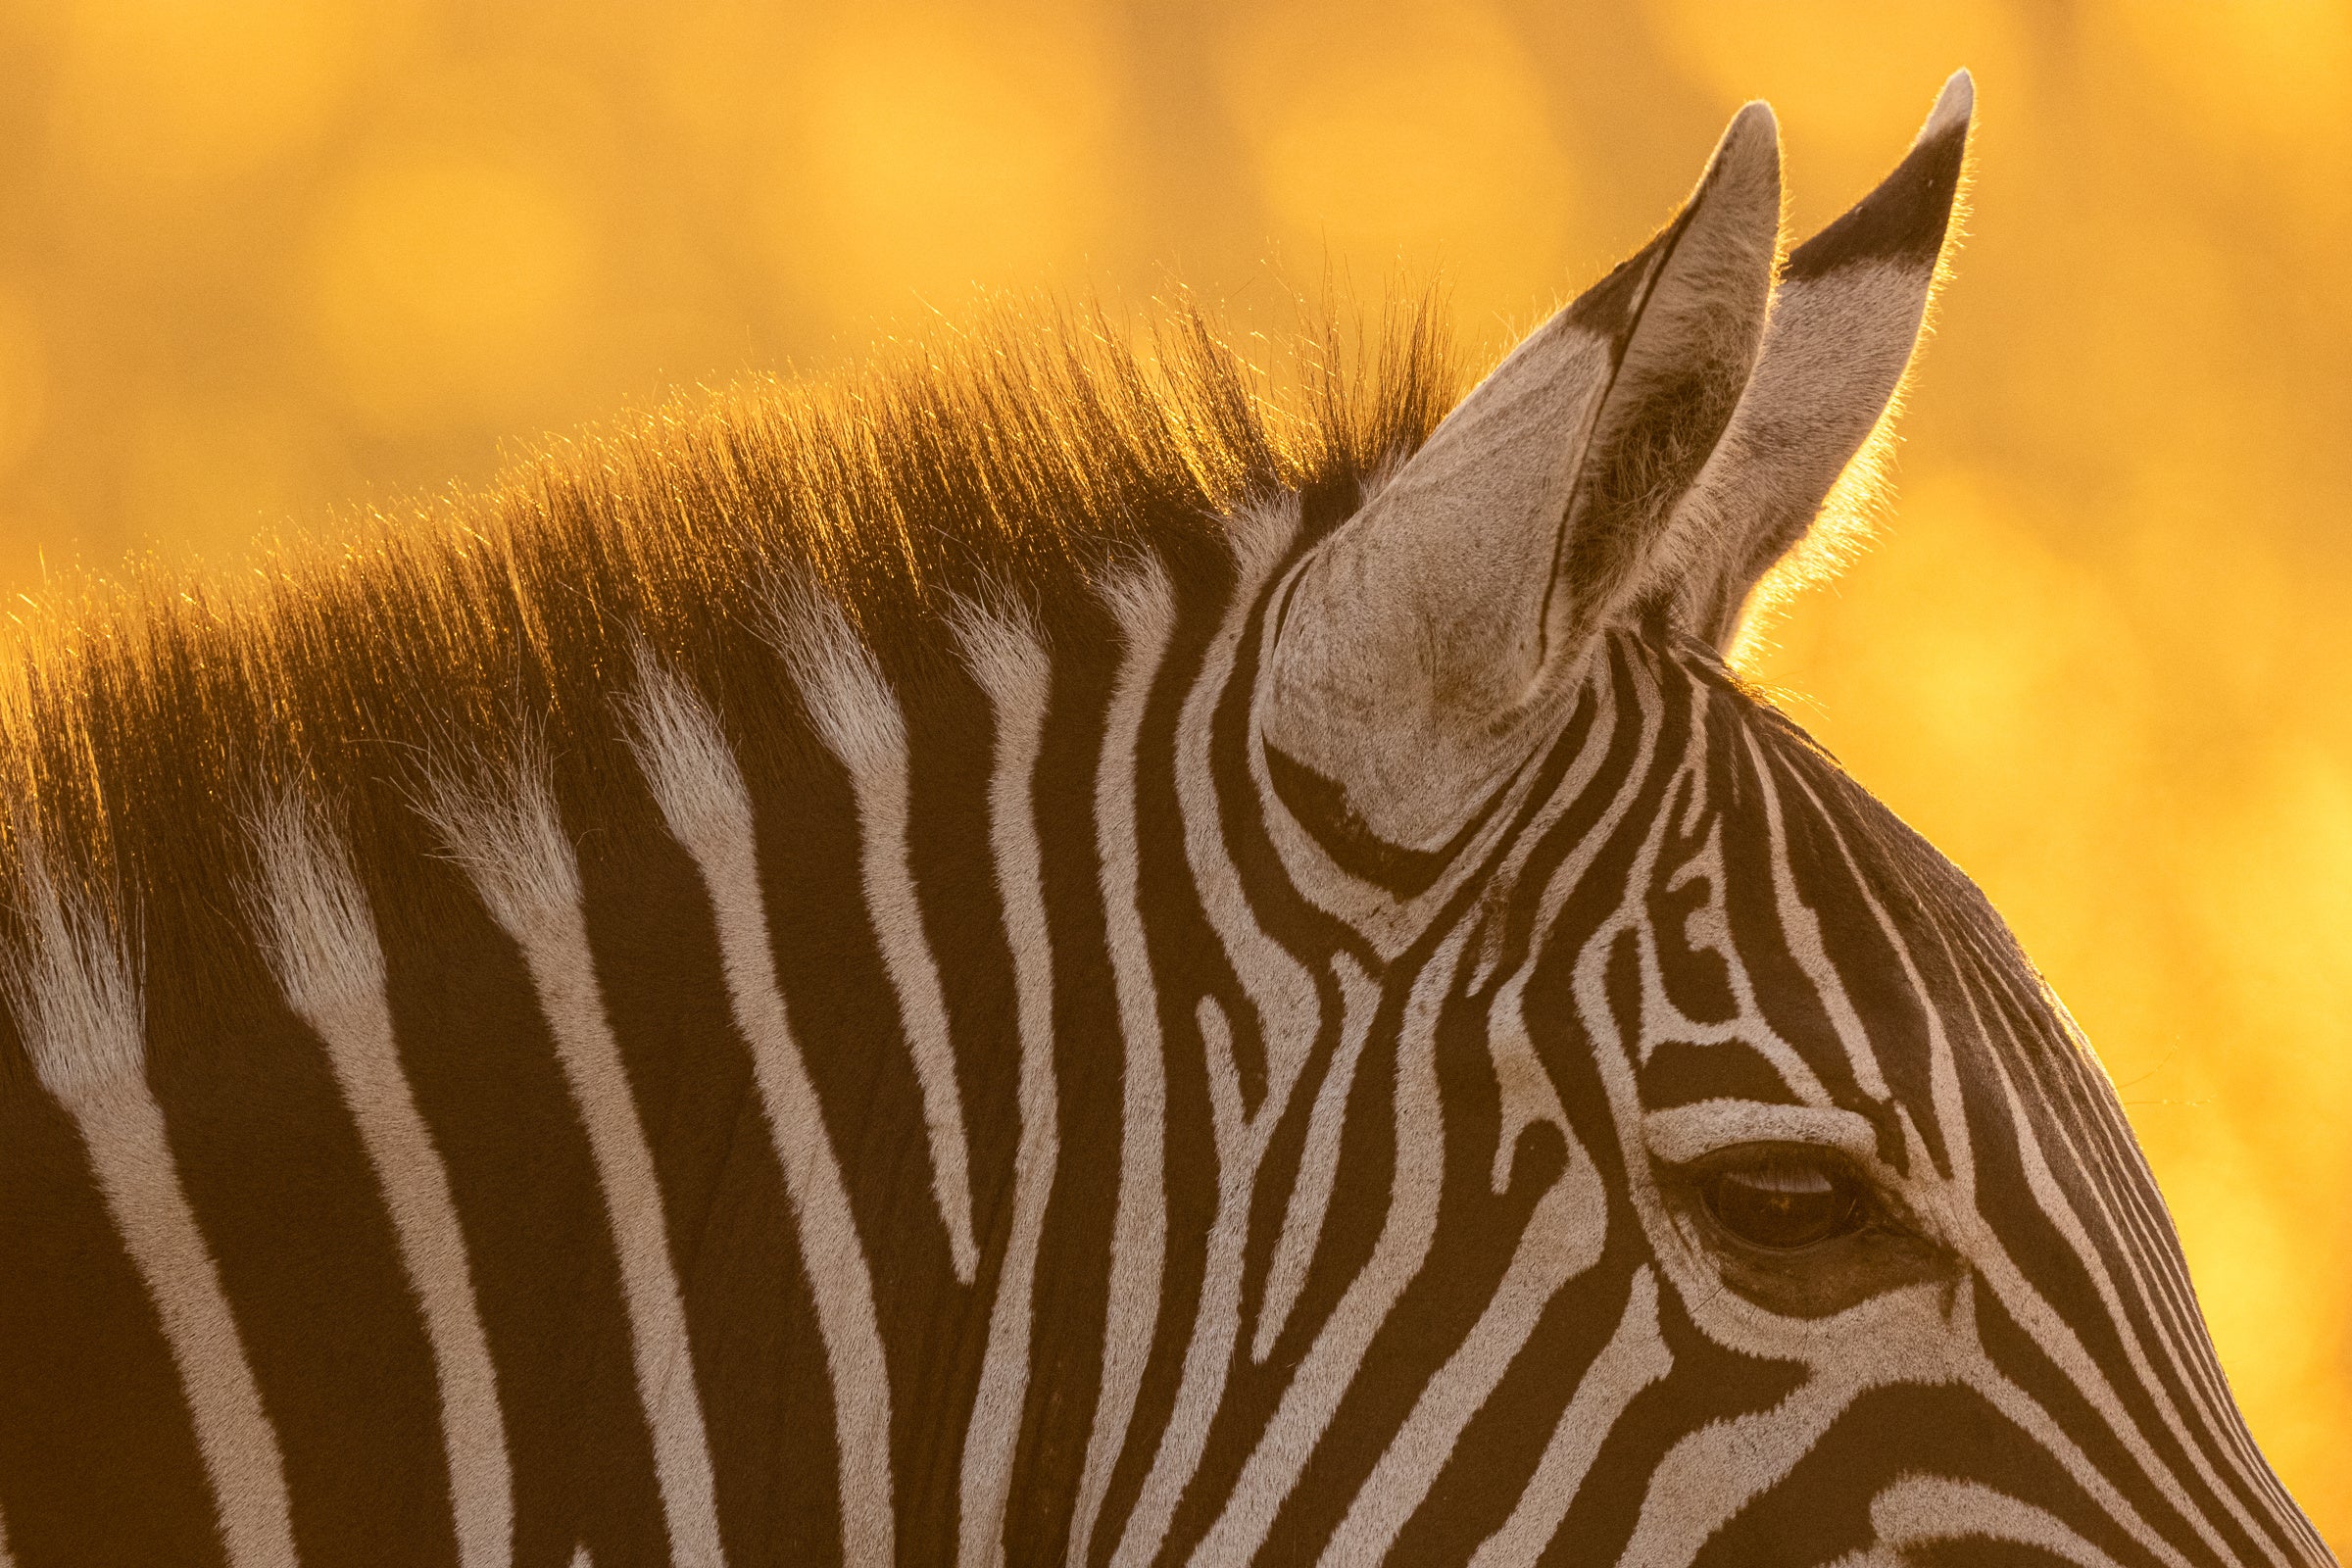 Zebra ears in golden light